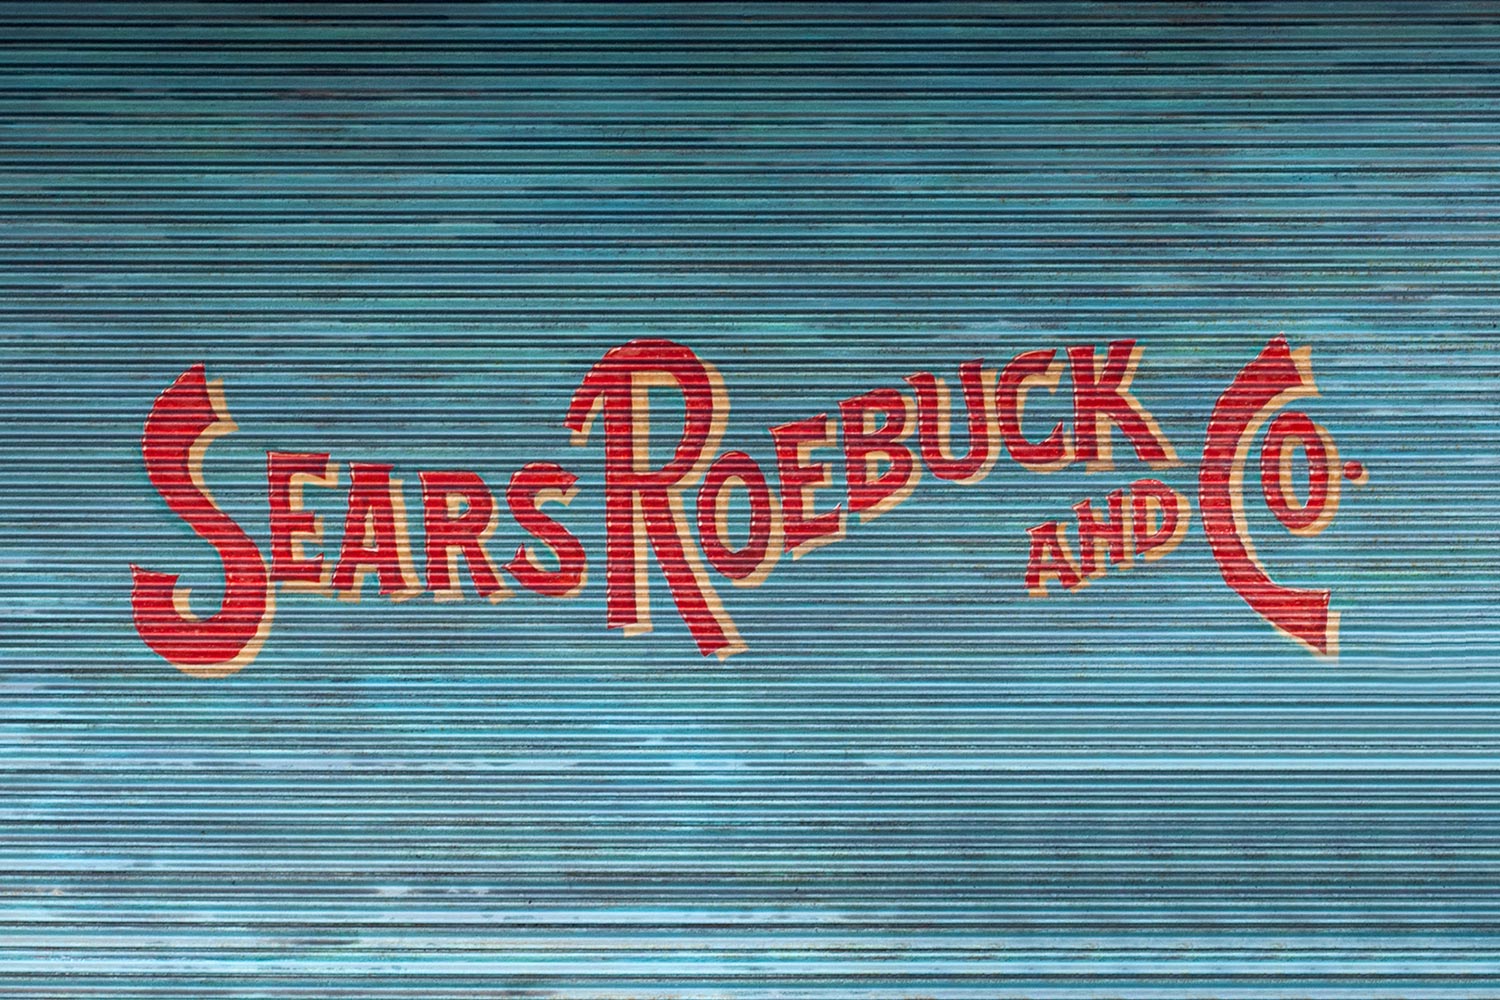 Sears Roebuck and Co.